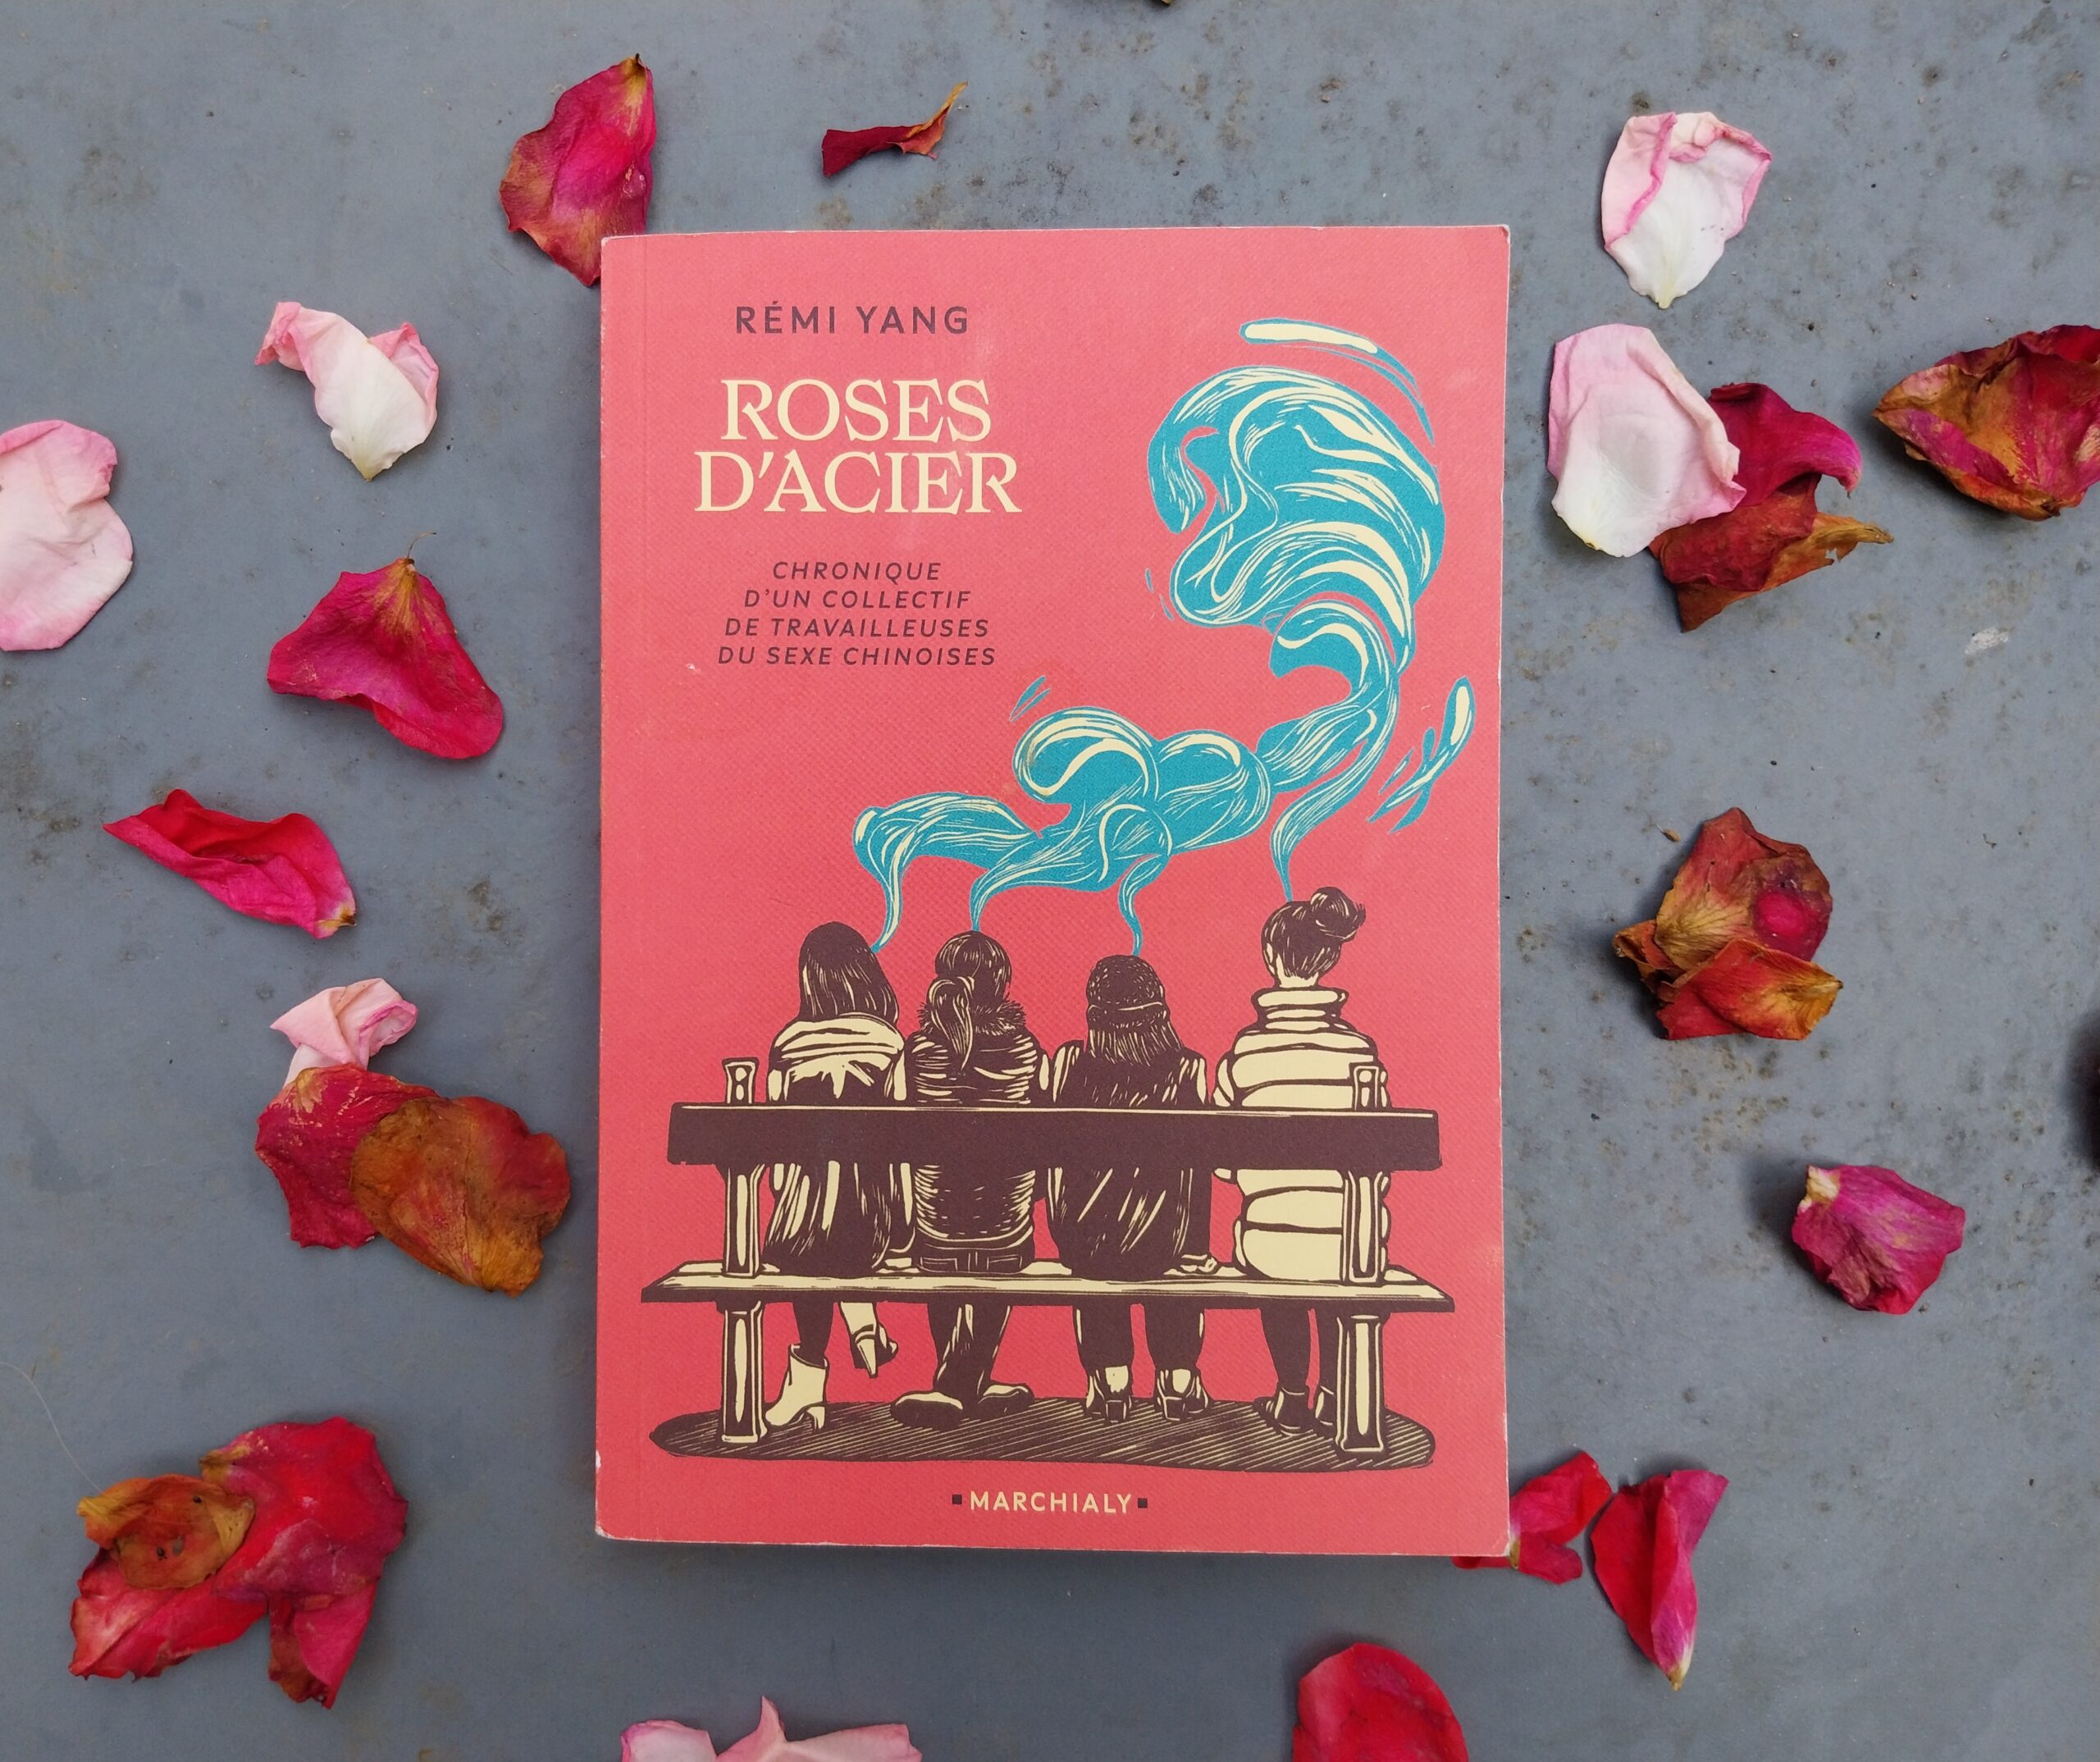 Roses d'acier by Rémi Yang